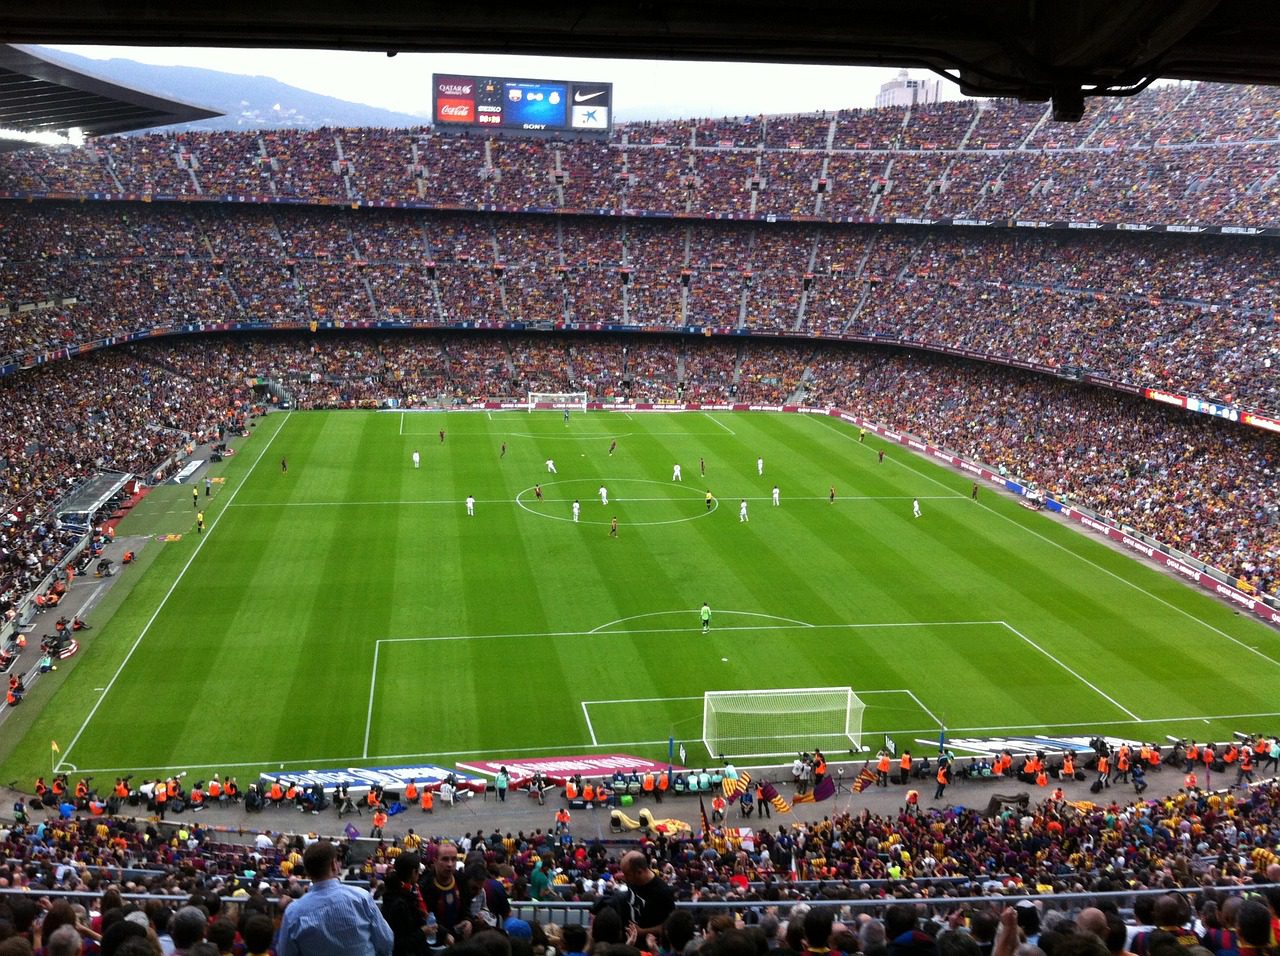 Catch a game at Camp Nou